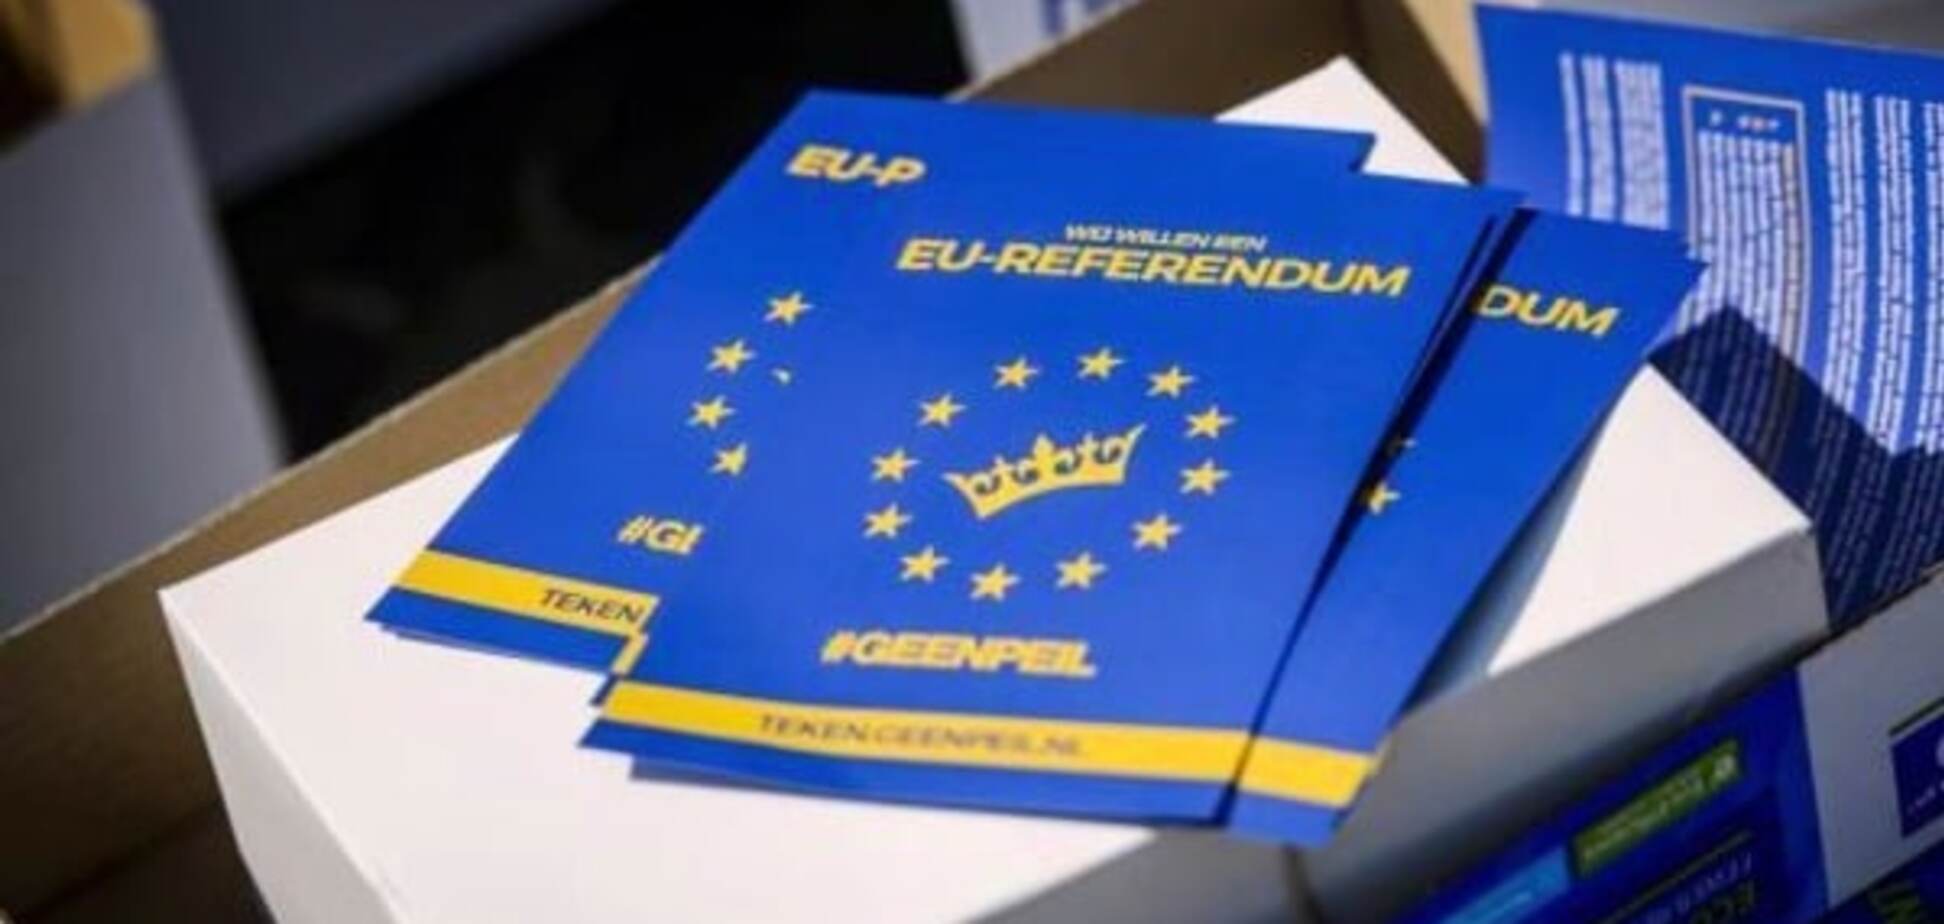 Нидерланды проинформировали Совет ЕС касательно референдума по Украине 